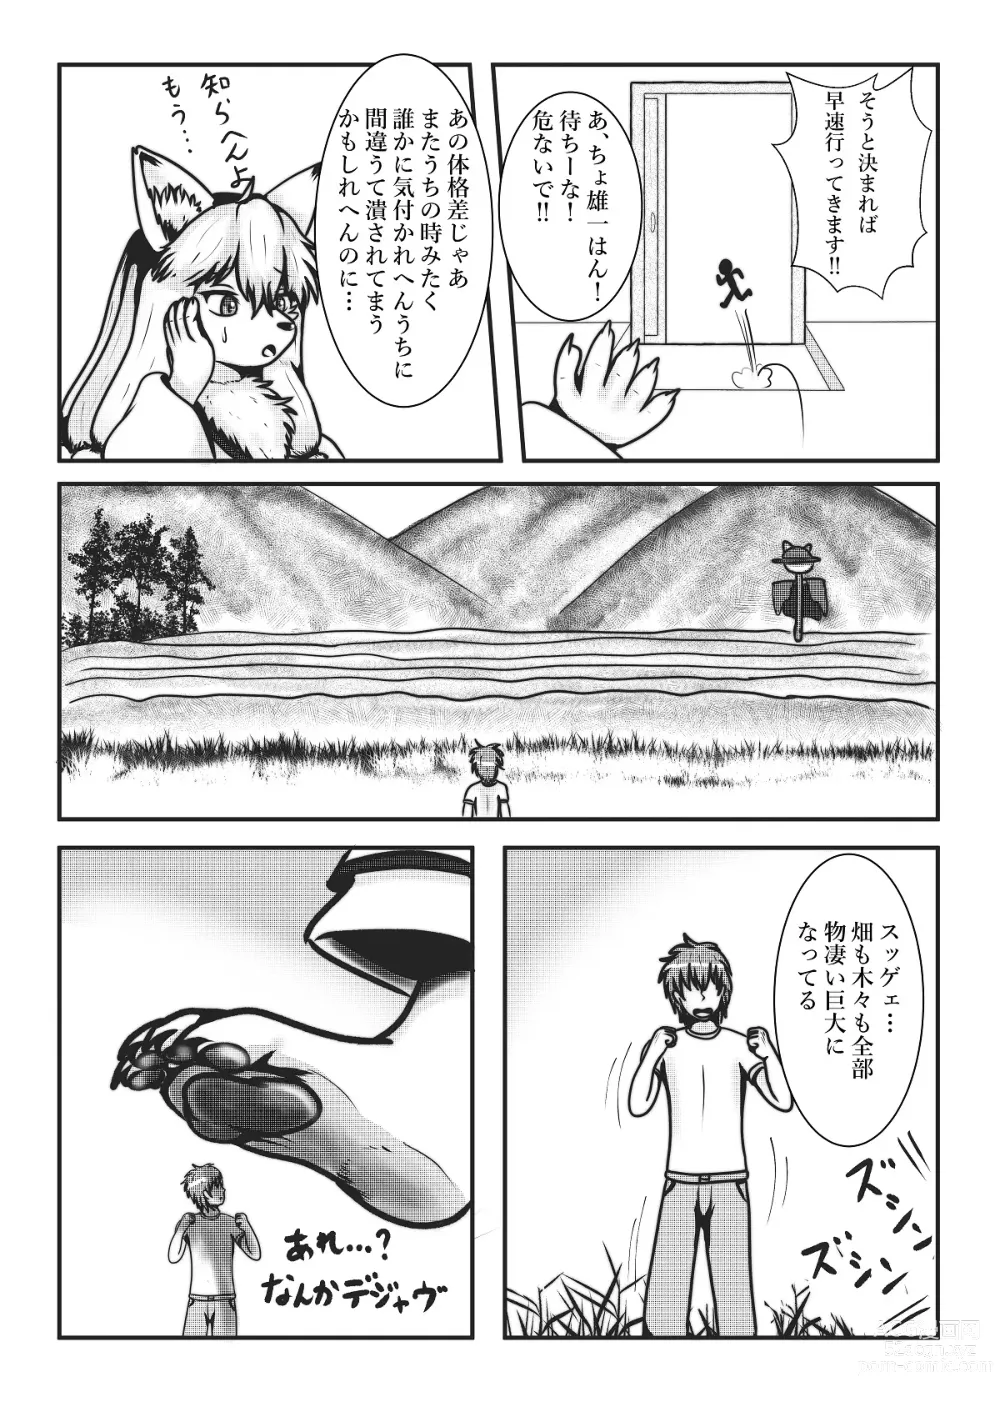 Page 9 of doujinshi Kyoju mura